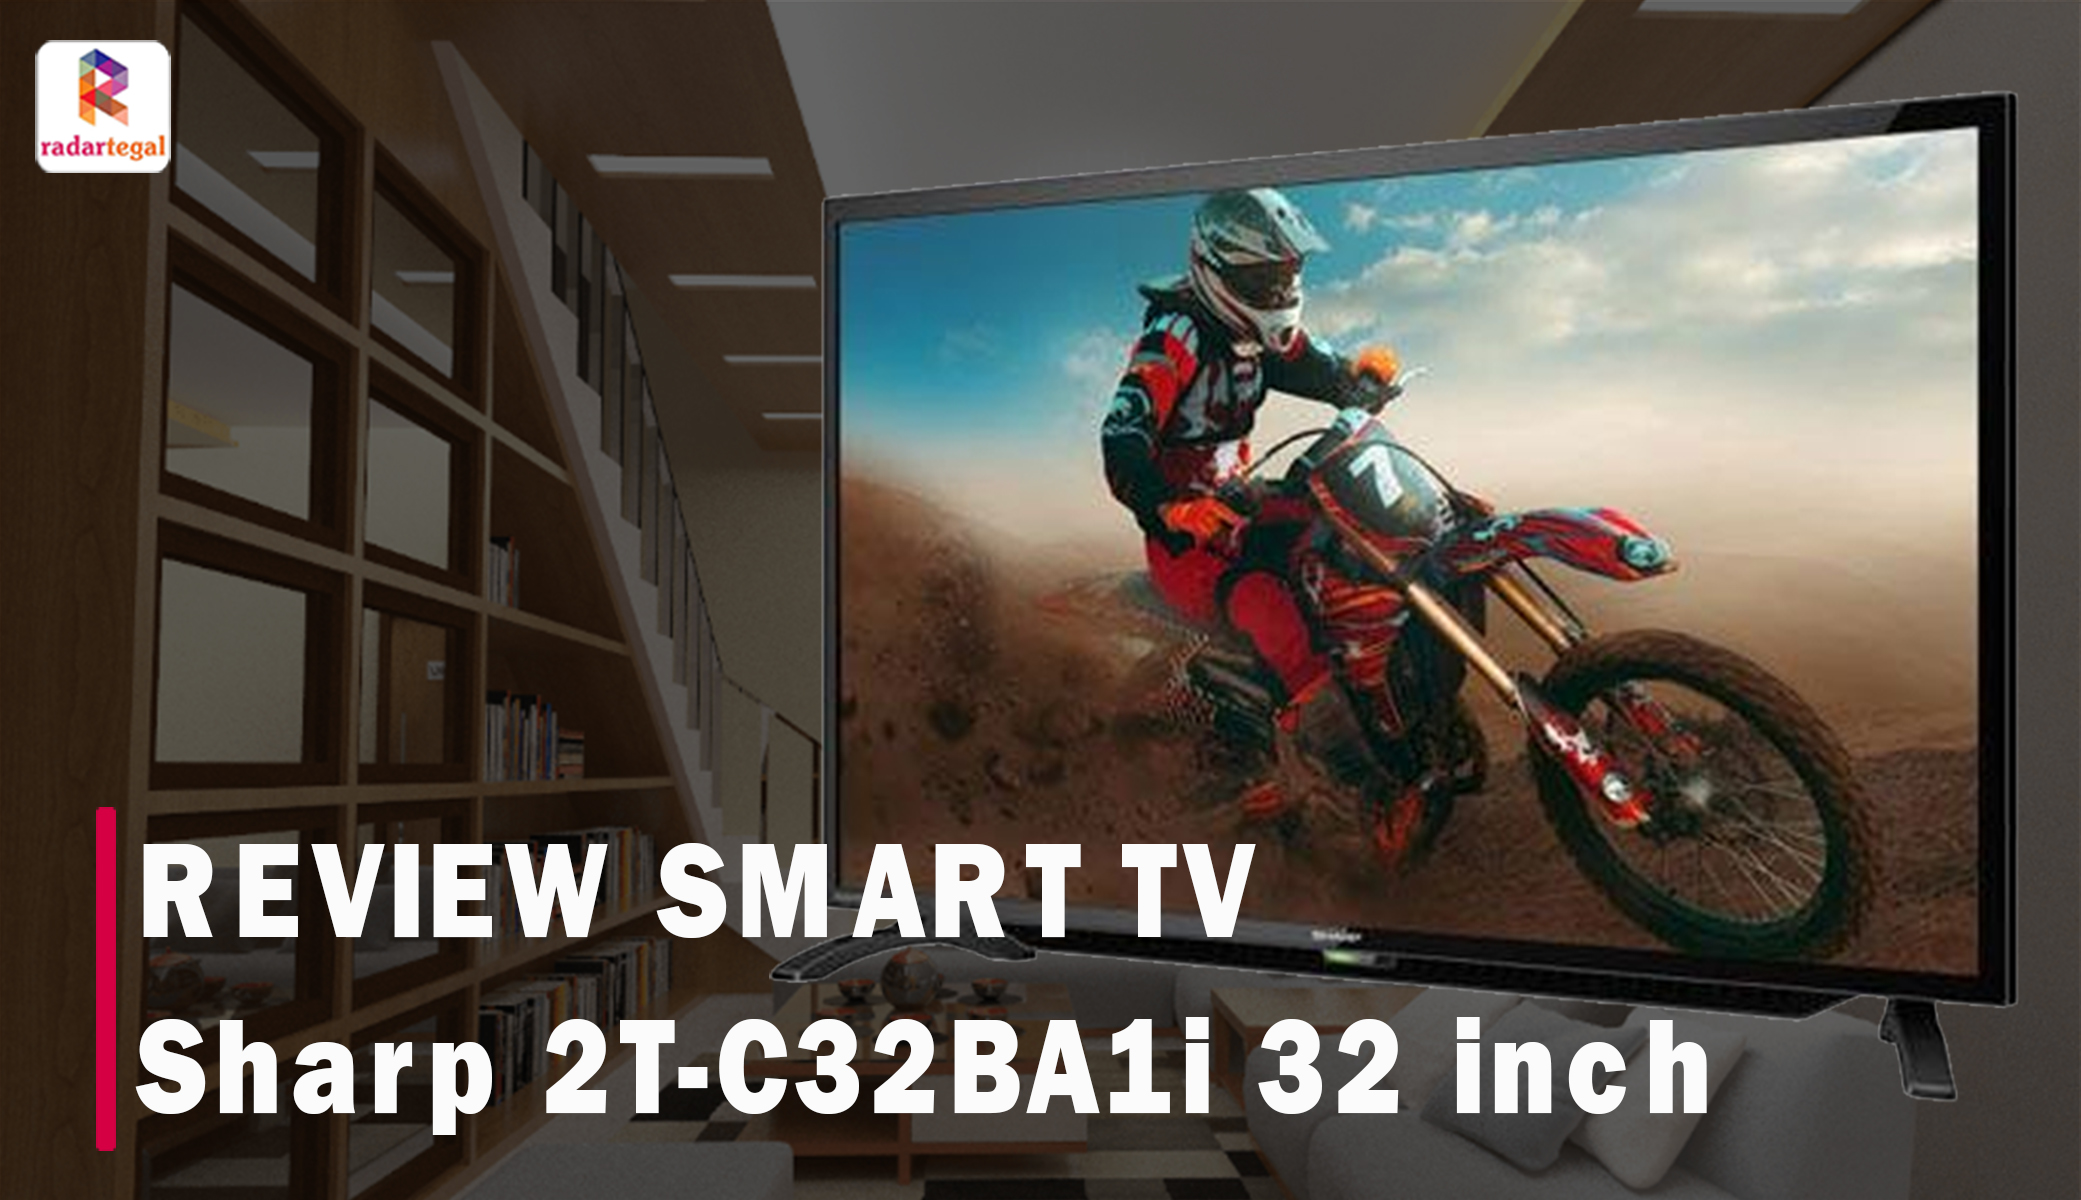 Mulai 2 Jutaan, Smart TV Sharp 2T-C32BA1i 32 Inch Bikin Hiburanmu Makin Asyik di Rumah, Berikut Reviewnya